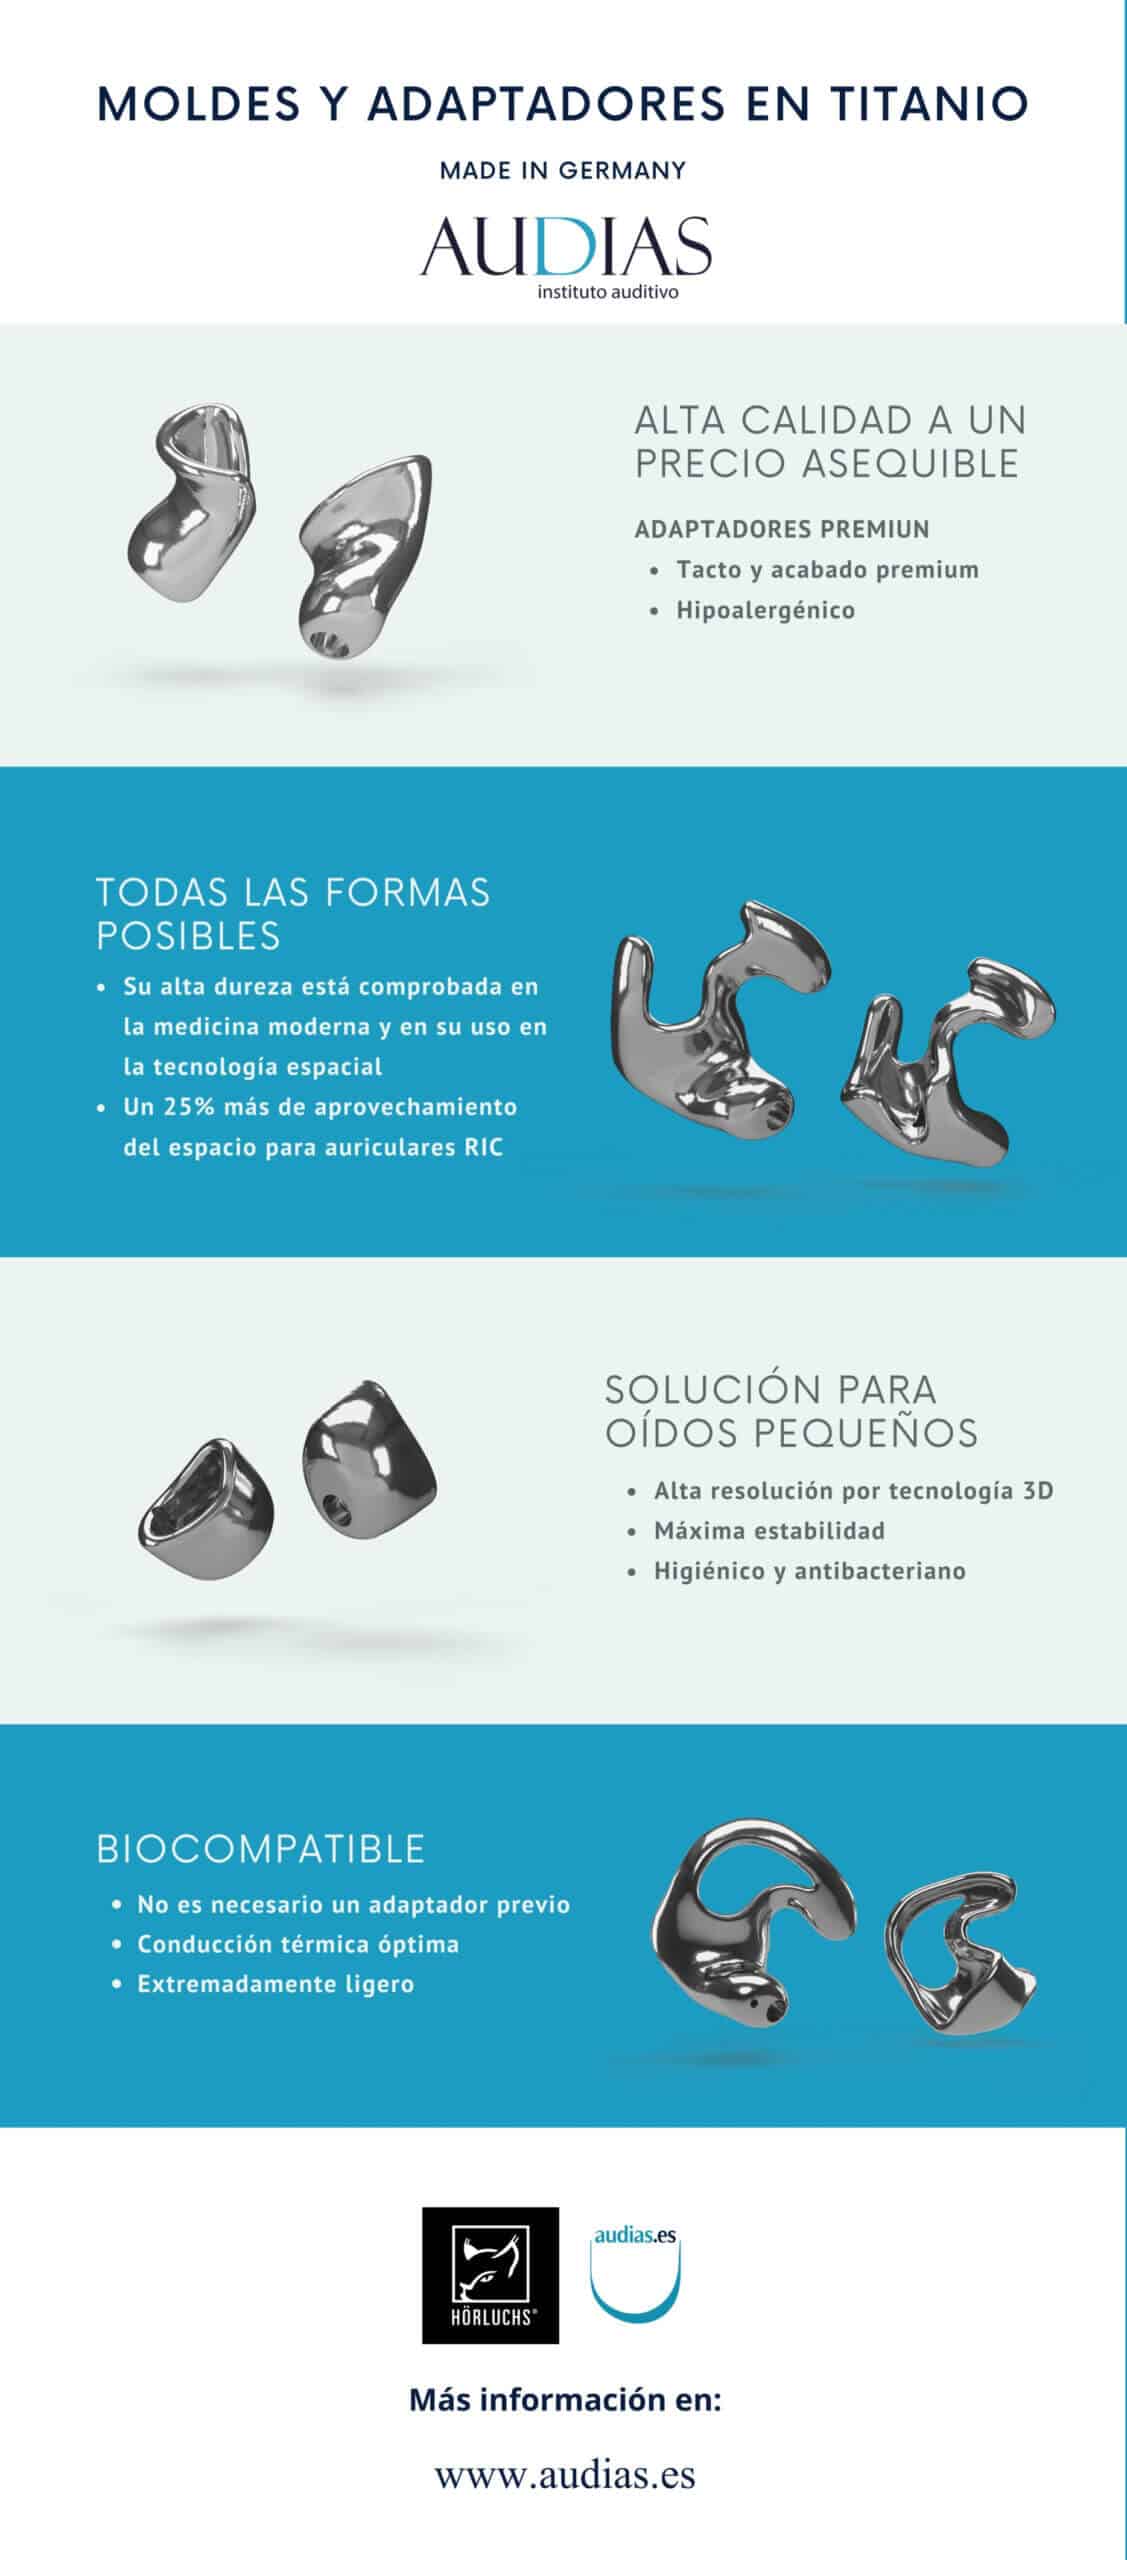 Moldes y adaptadores auditivos en titanio